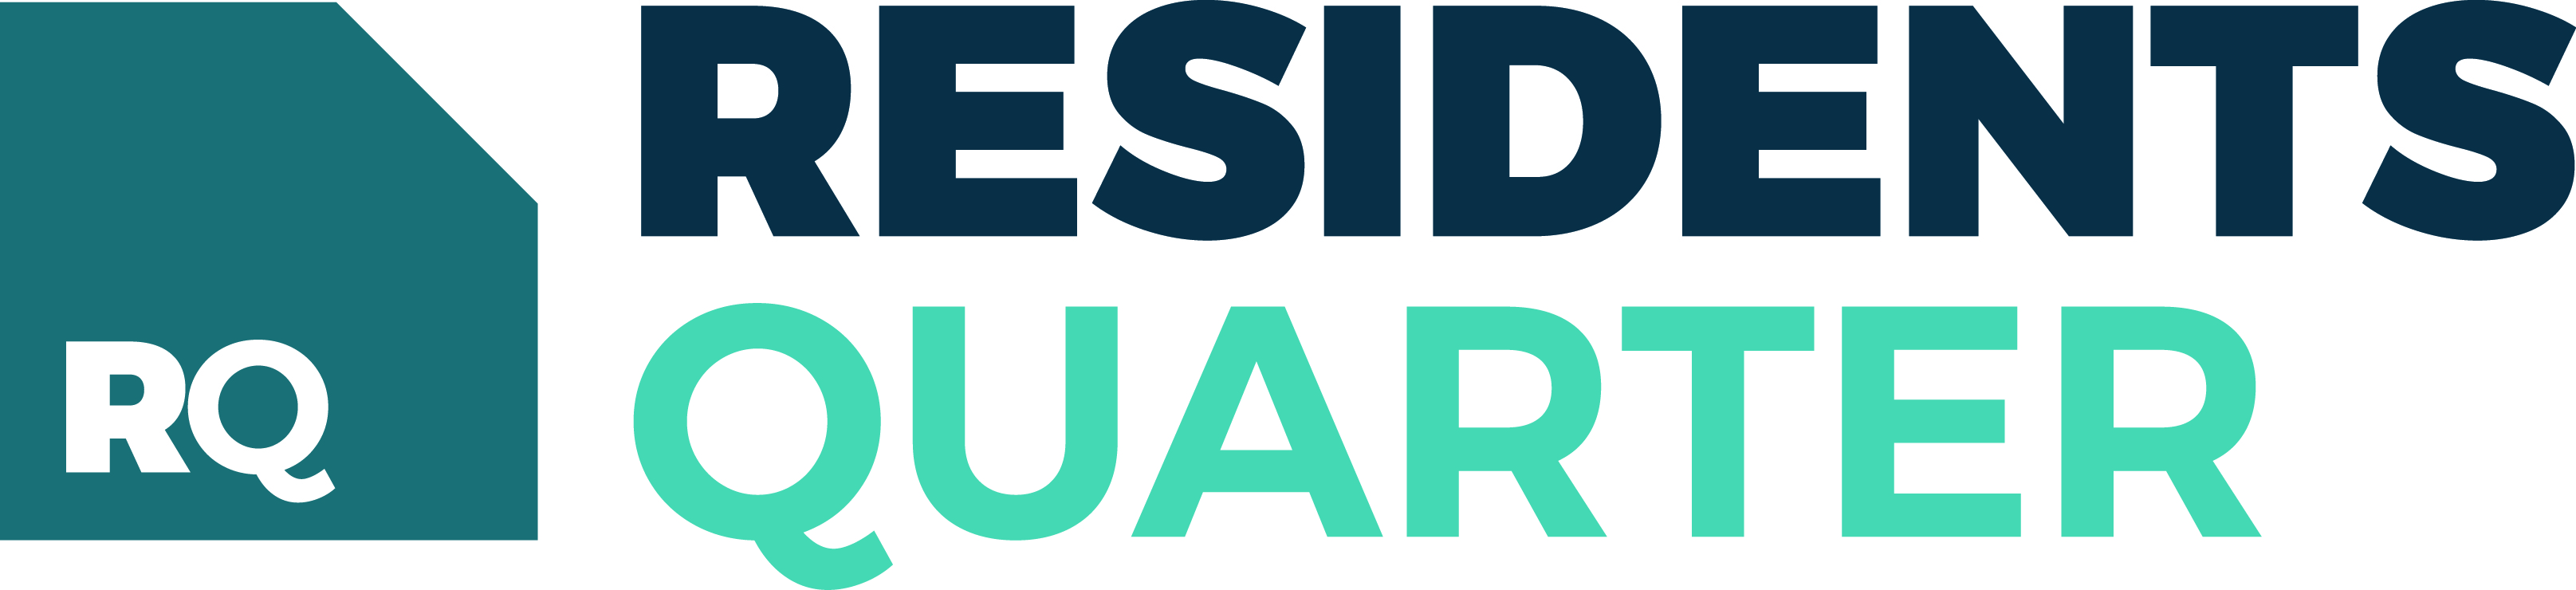 Residents quarter logo